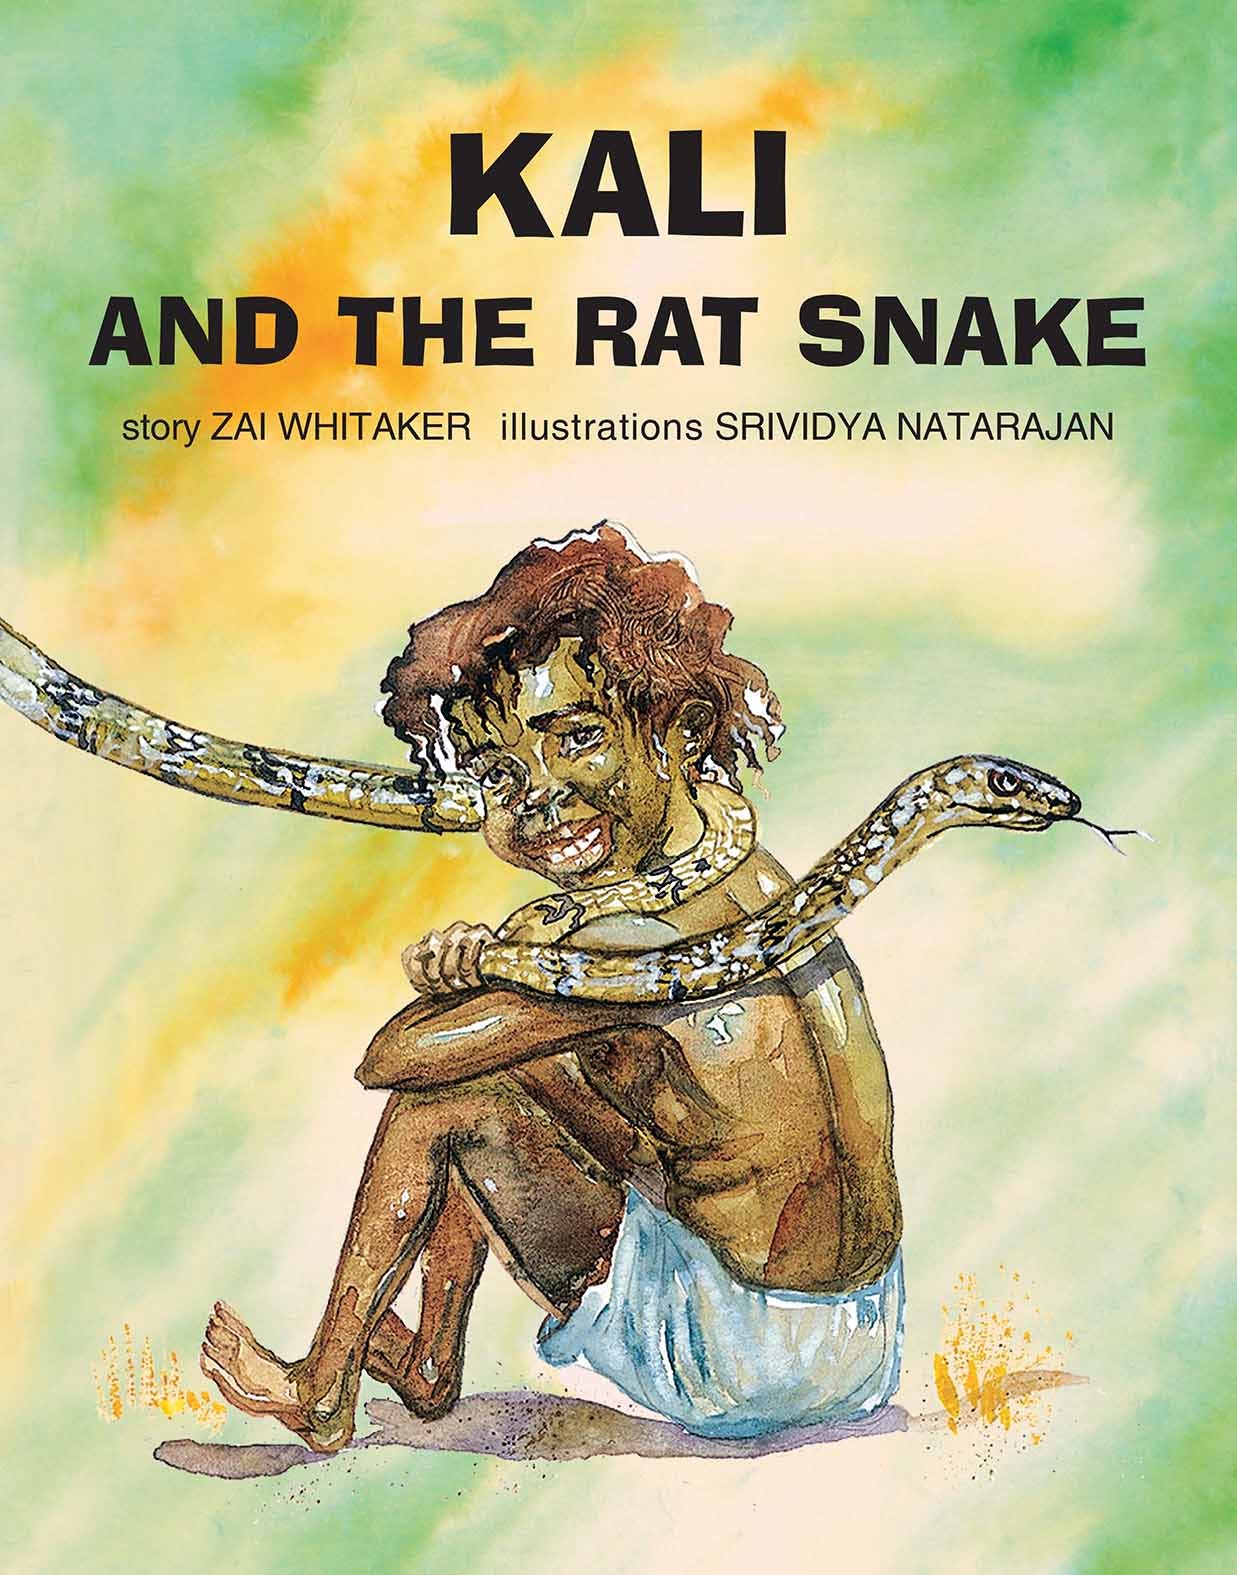 Kali And The Rat Snake (English)